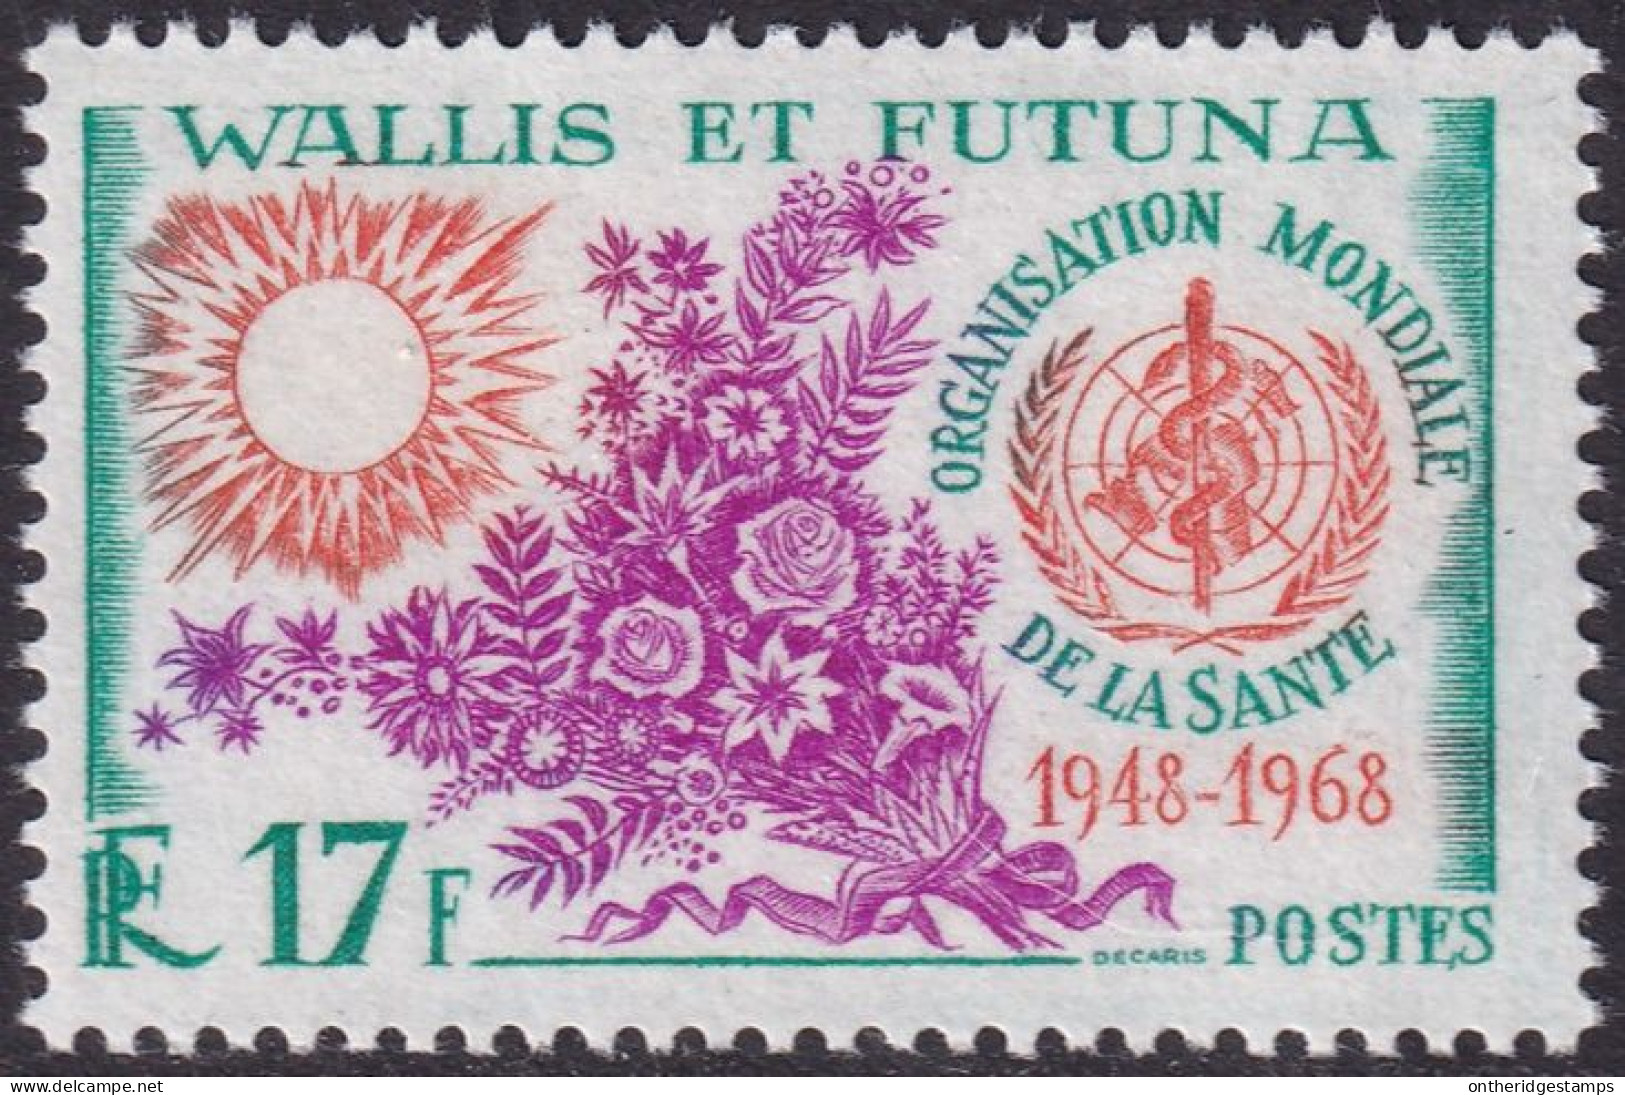 Wallis & Futuna 1968 Sc 169  MNH** - Nuevos